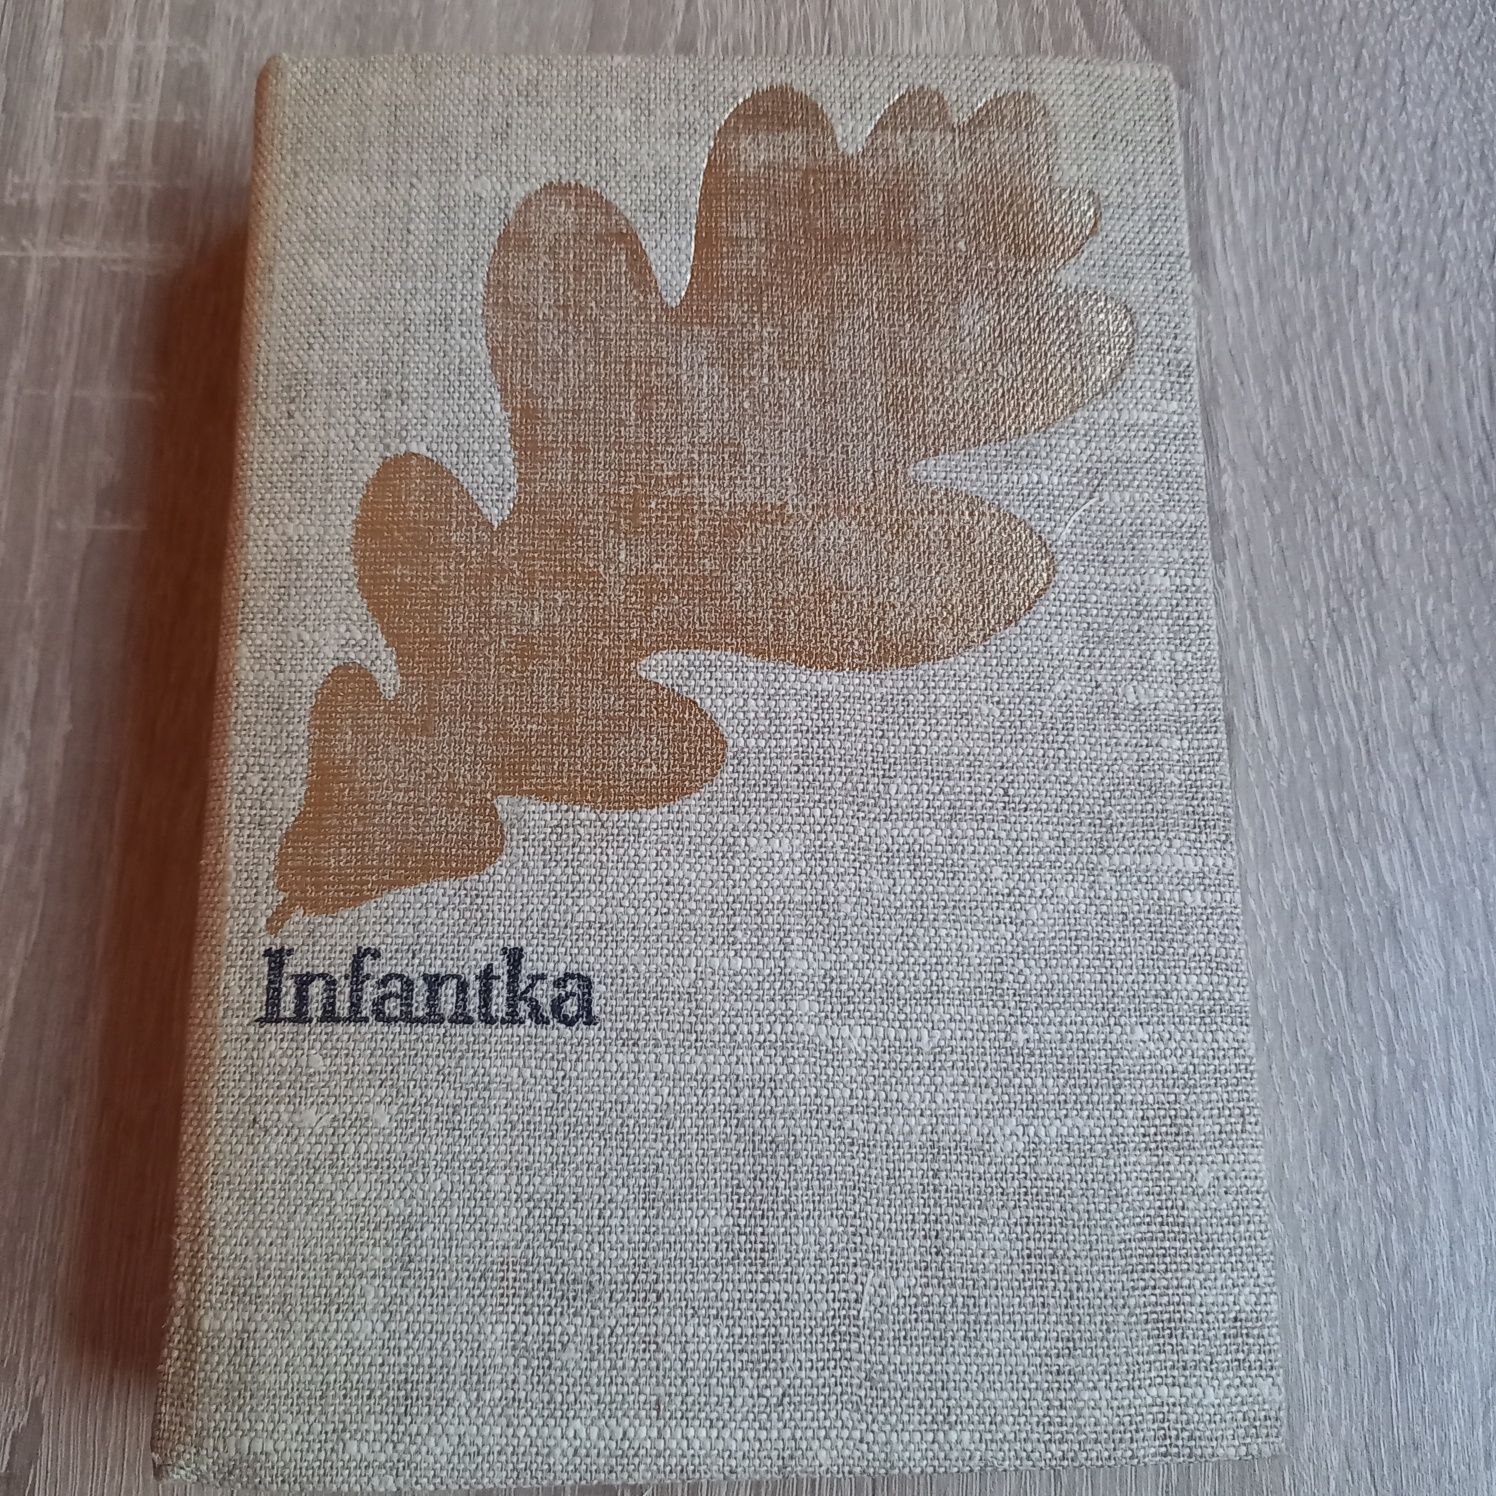 Książka Infantka / Józef Ignacy Kraszewski